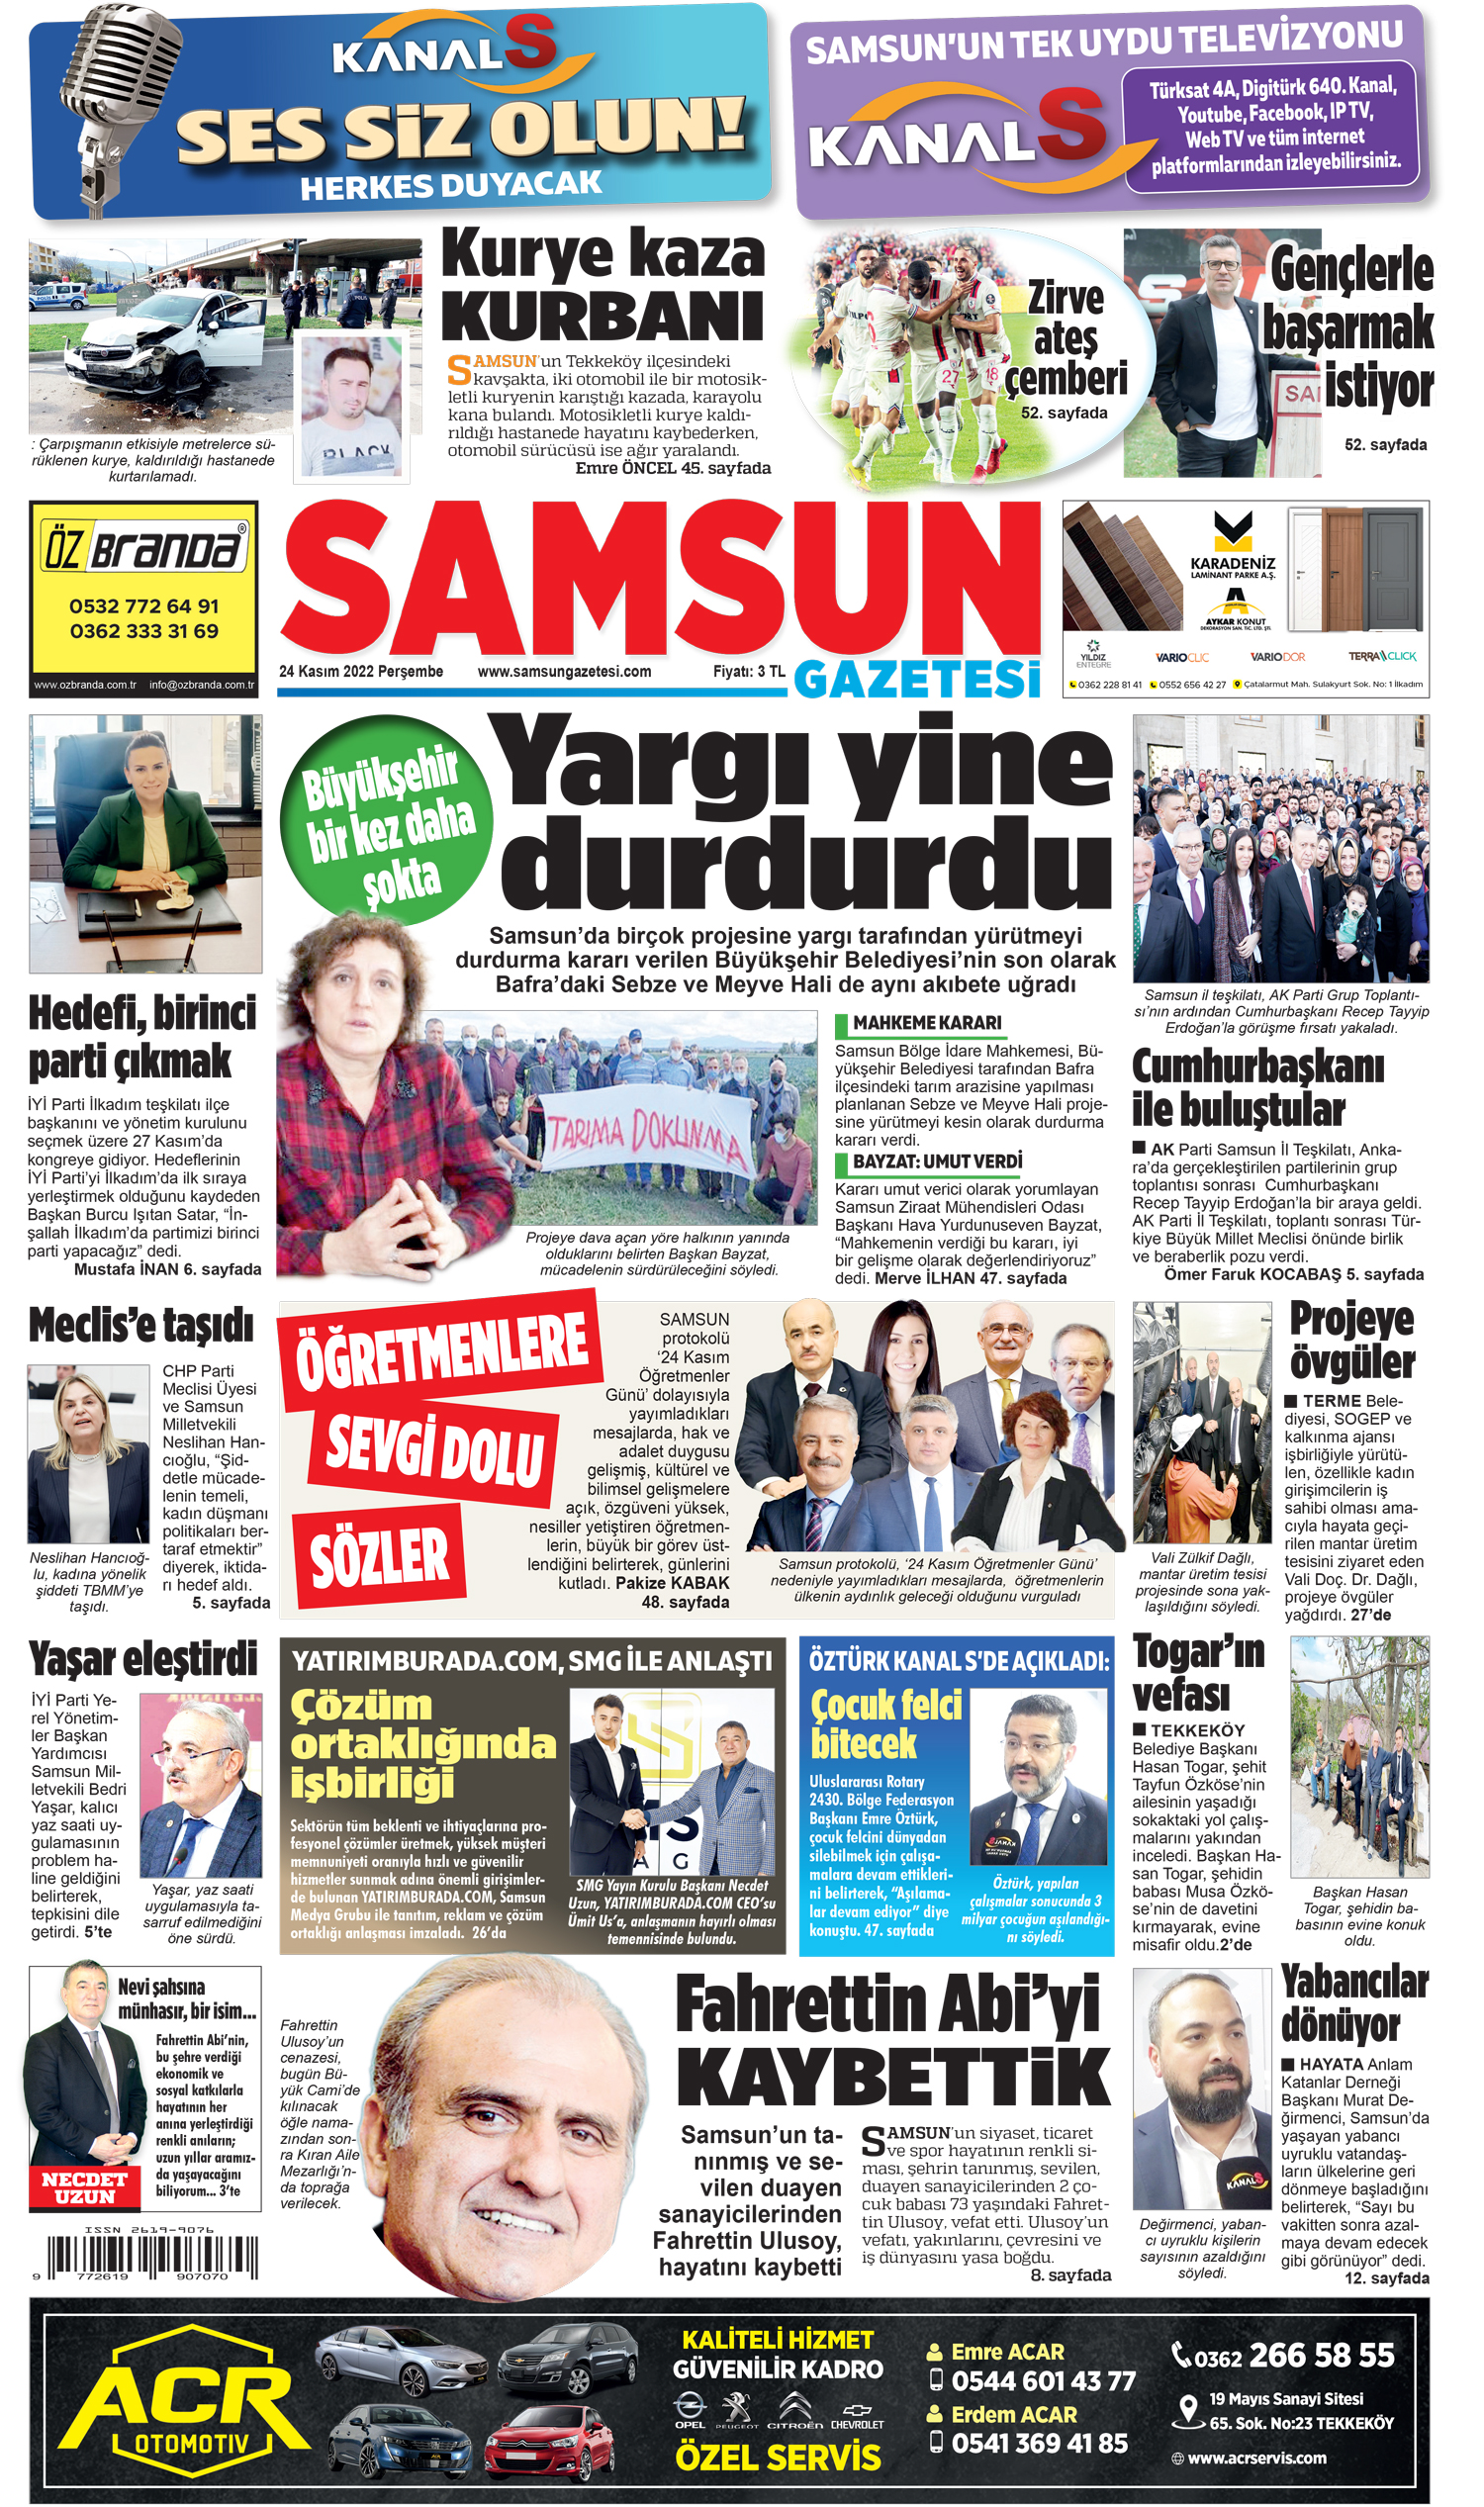 24 Kasım Perşembe Samsun Gazetesi